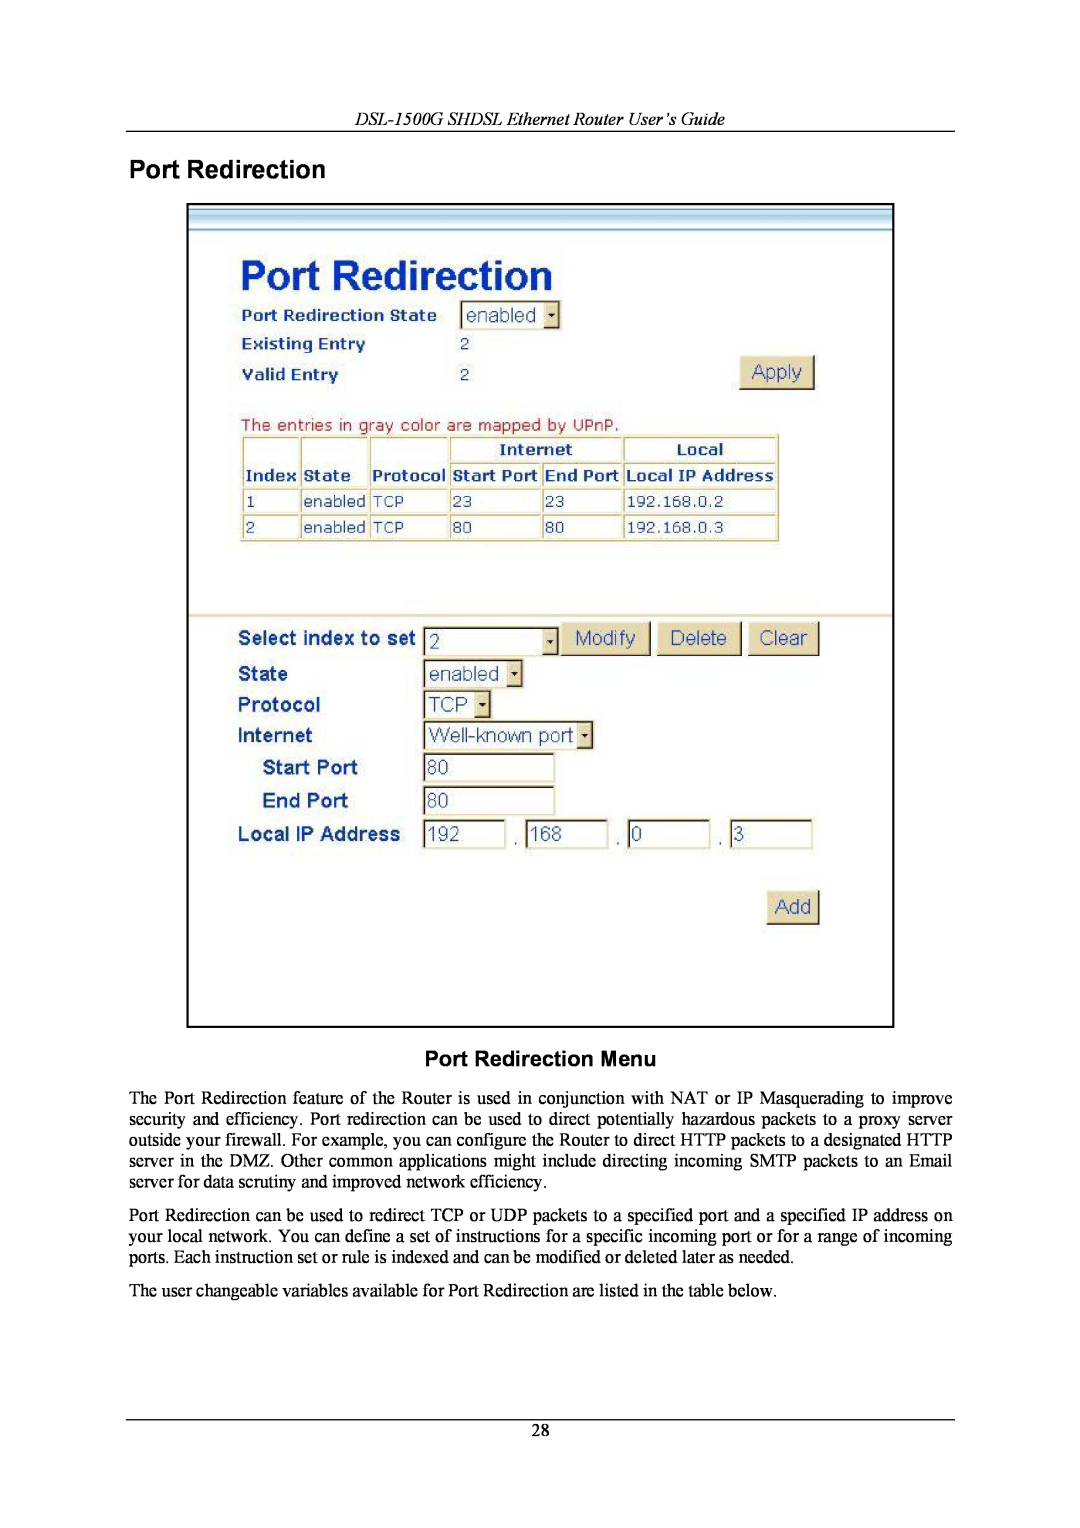 D-Link manual Port Redirection Menu, DSL-1500G SHDSL Ethernet Router User’s Guide 